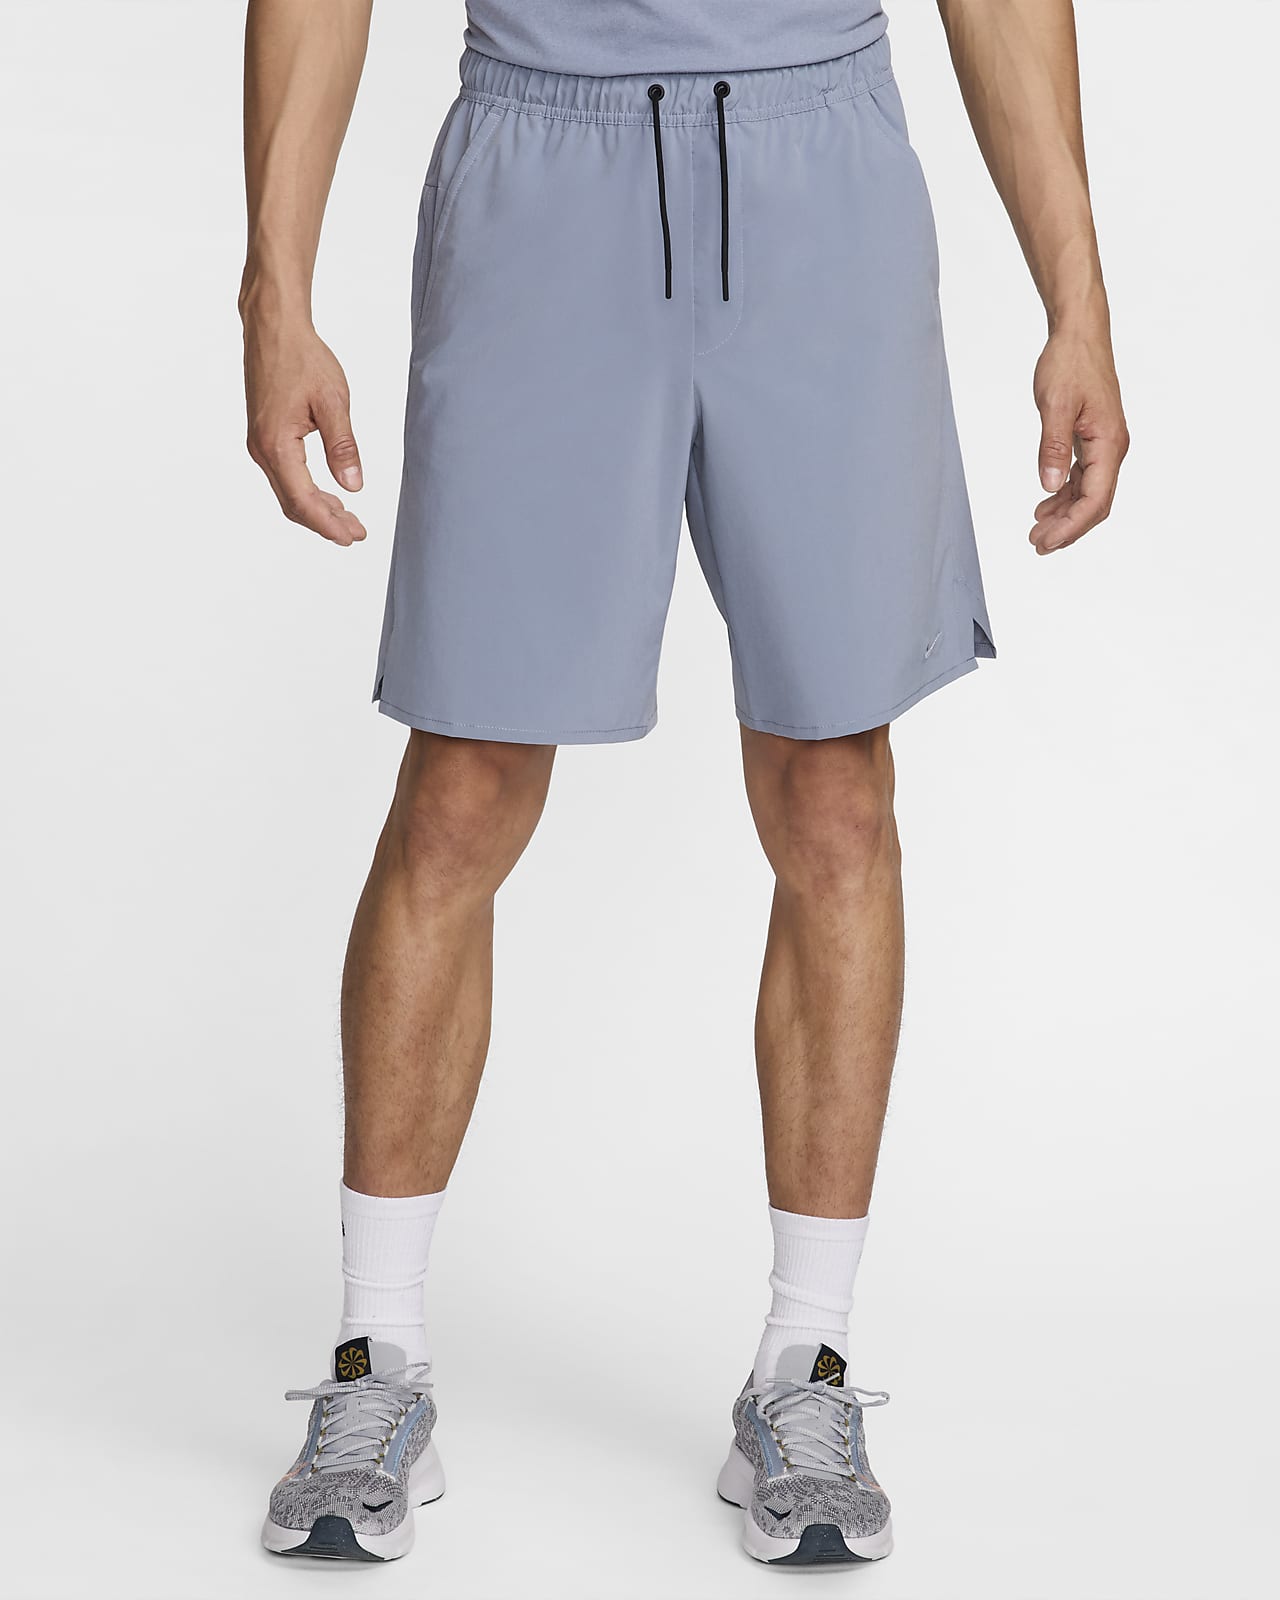 Nike Unlimited Men's Dri-FIT 9 Unlined Versatile Shorts.